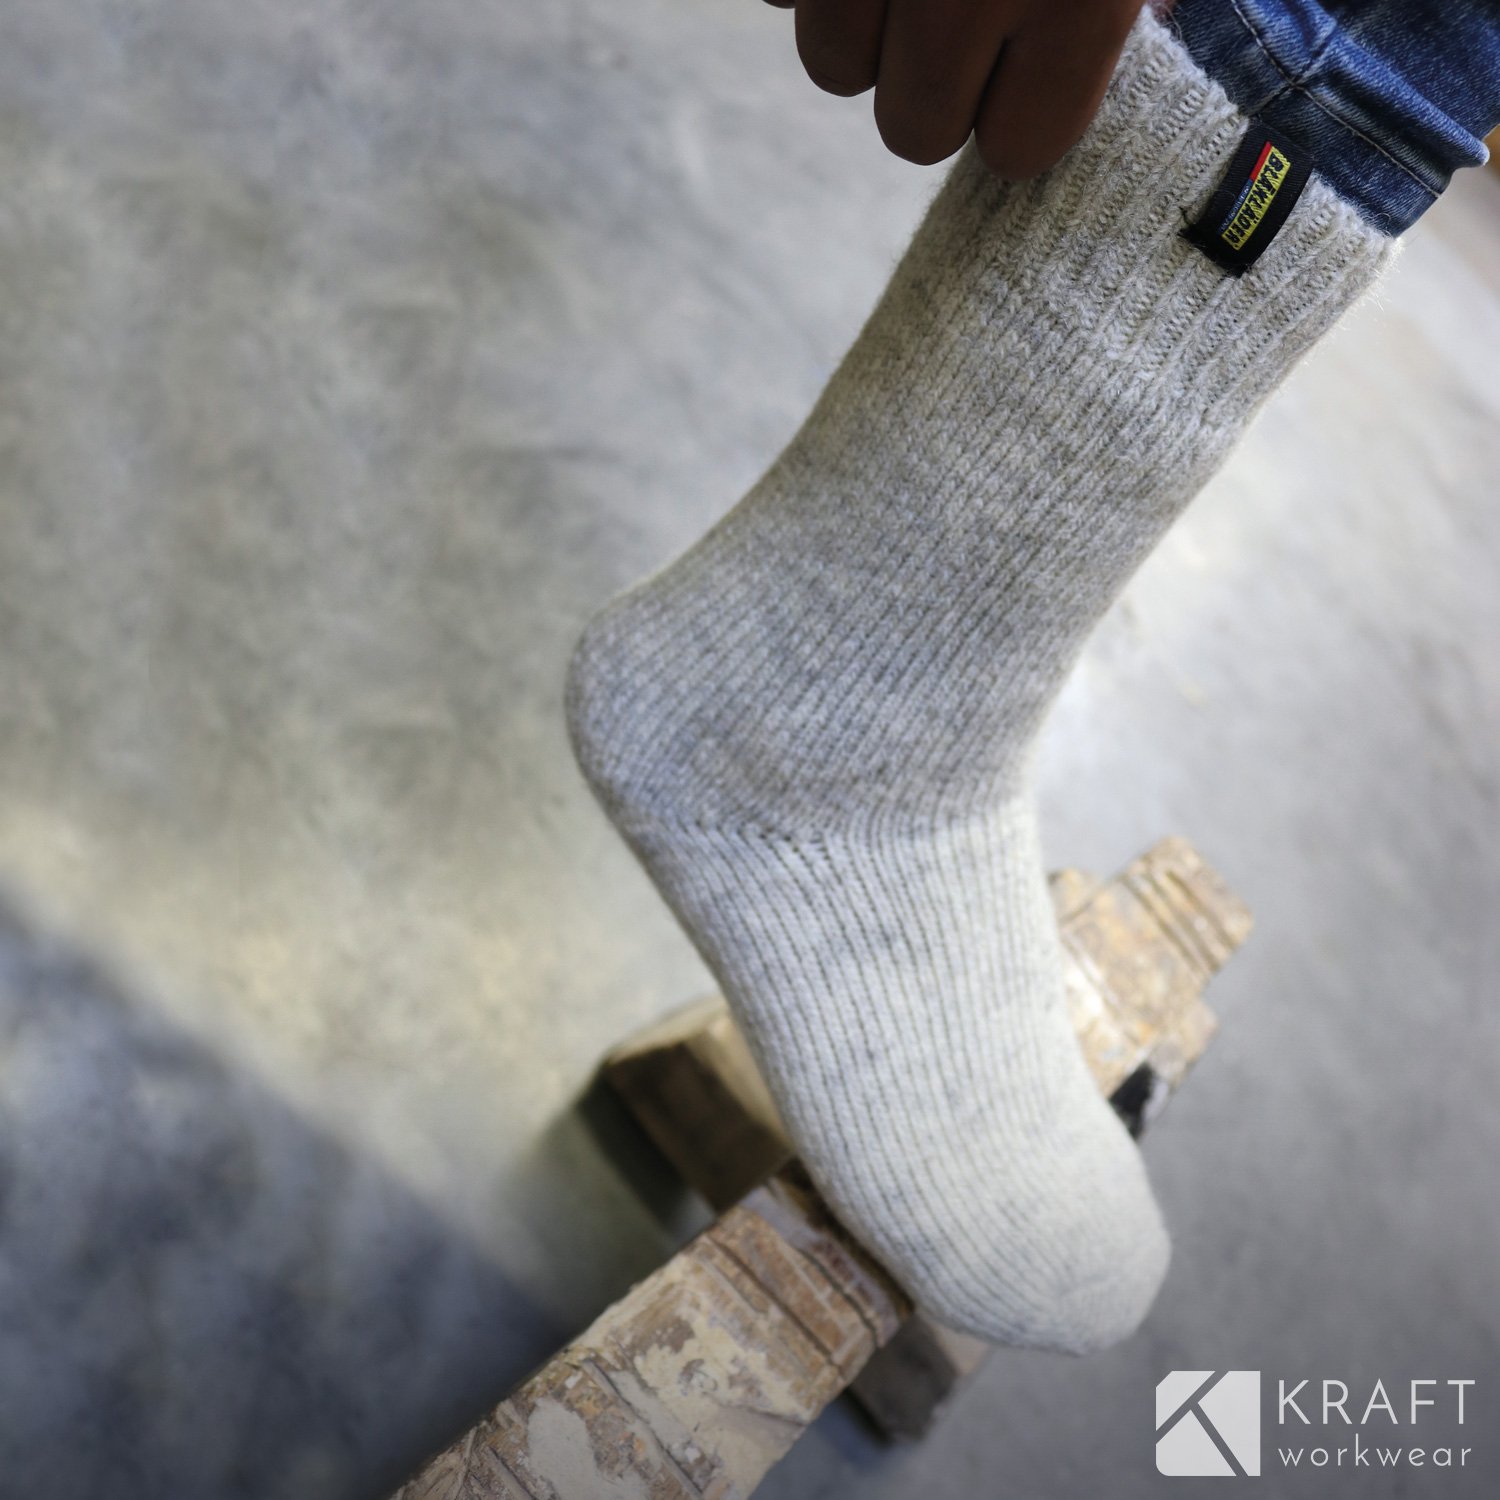 Chaussettes en laine pour le froid - Kraft Workwear